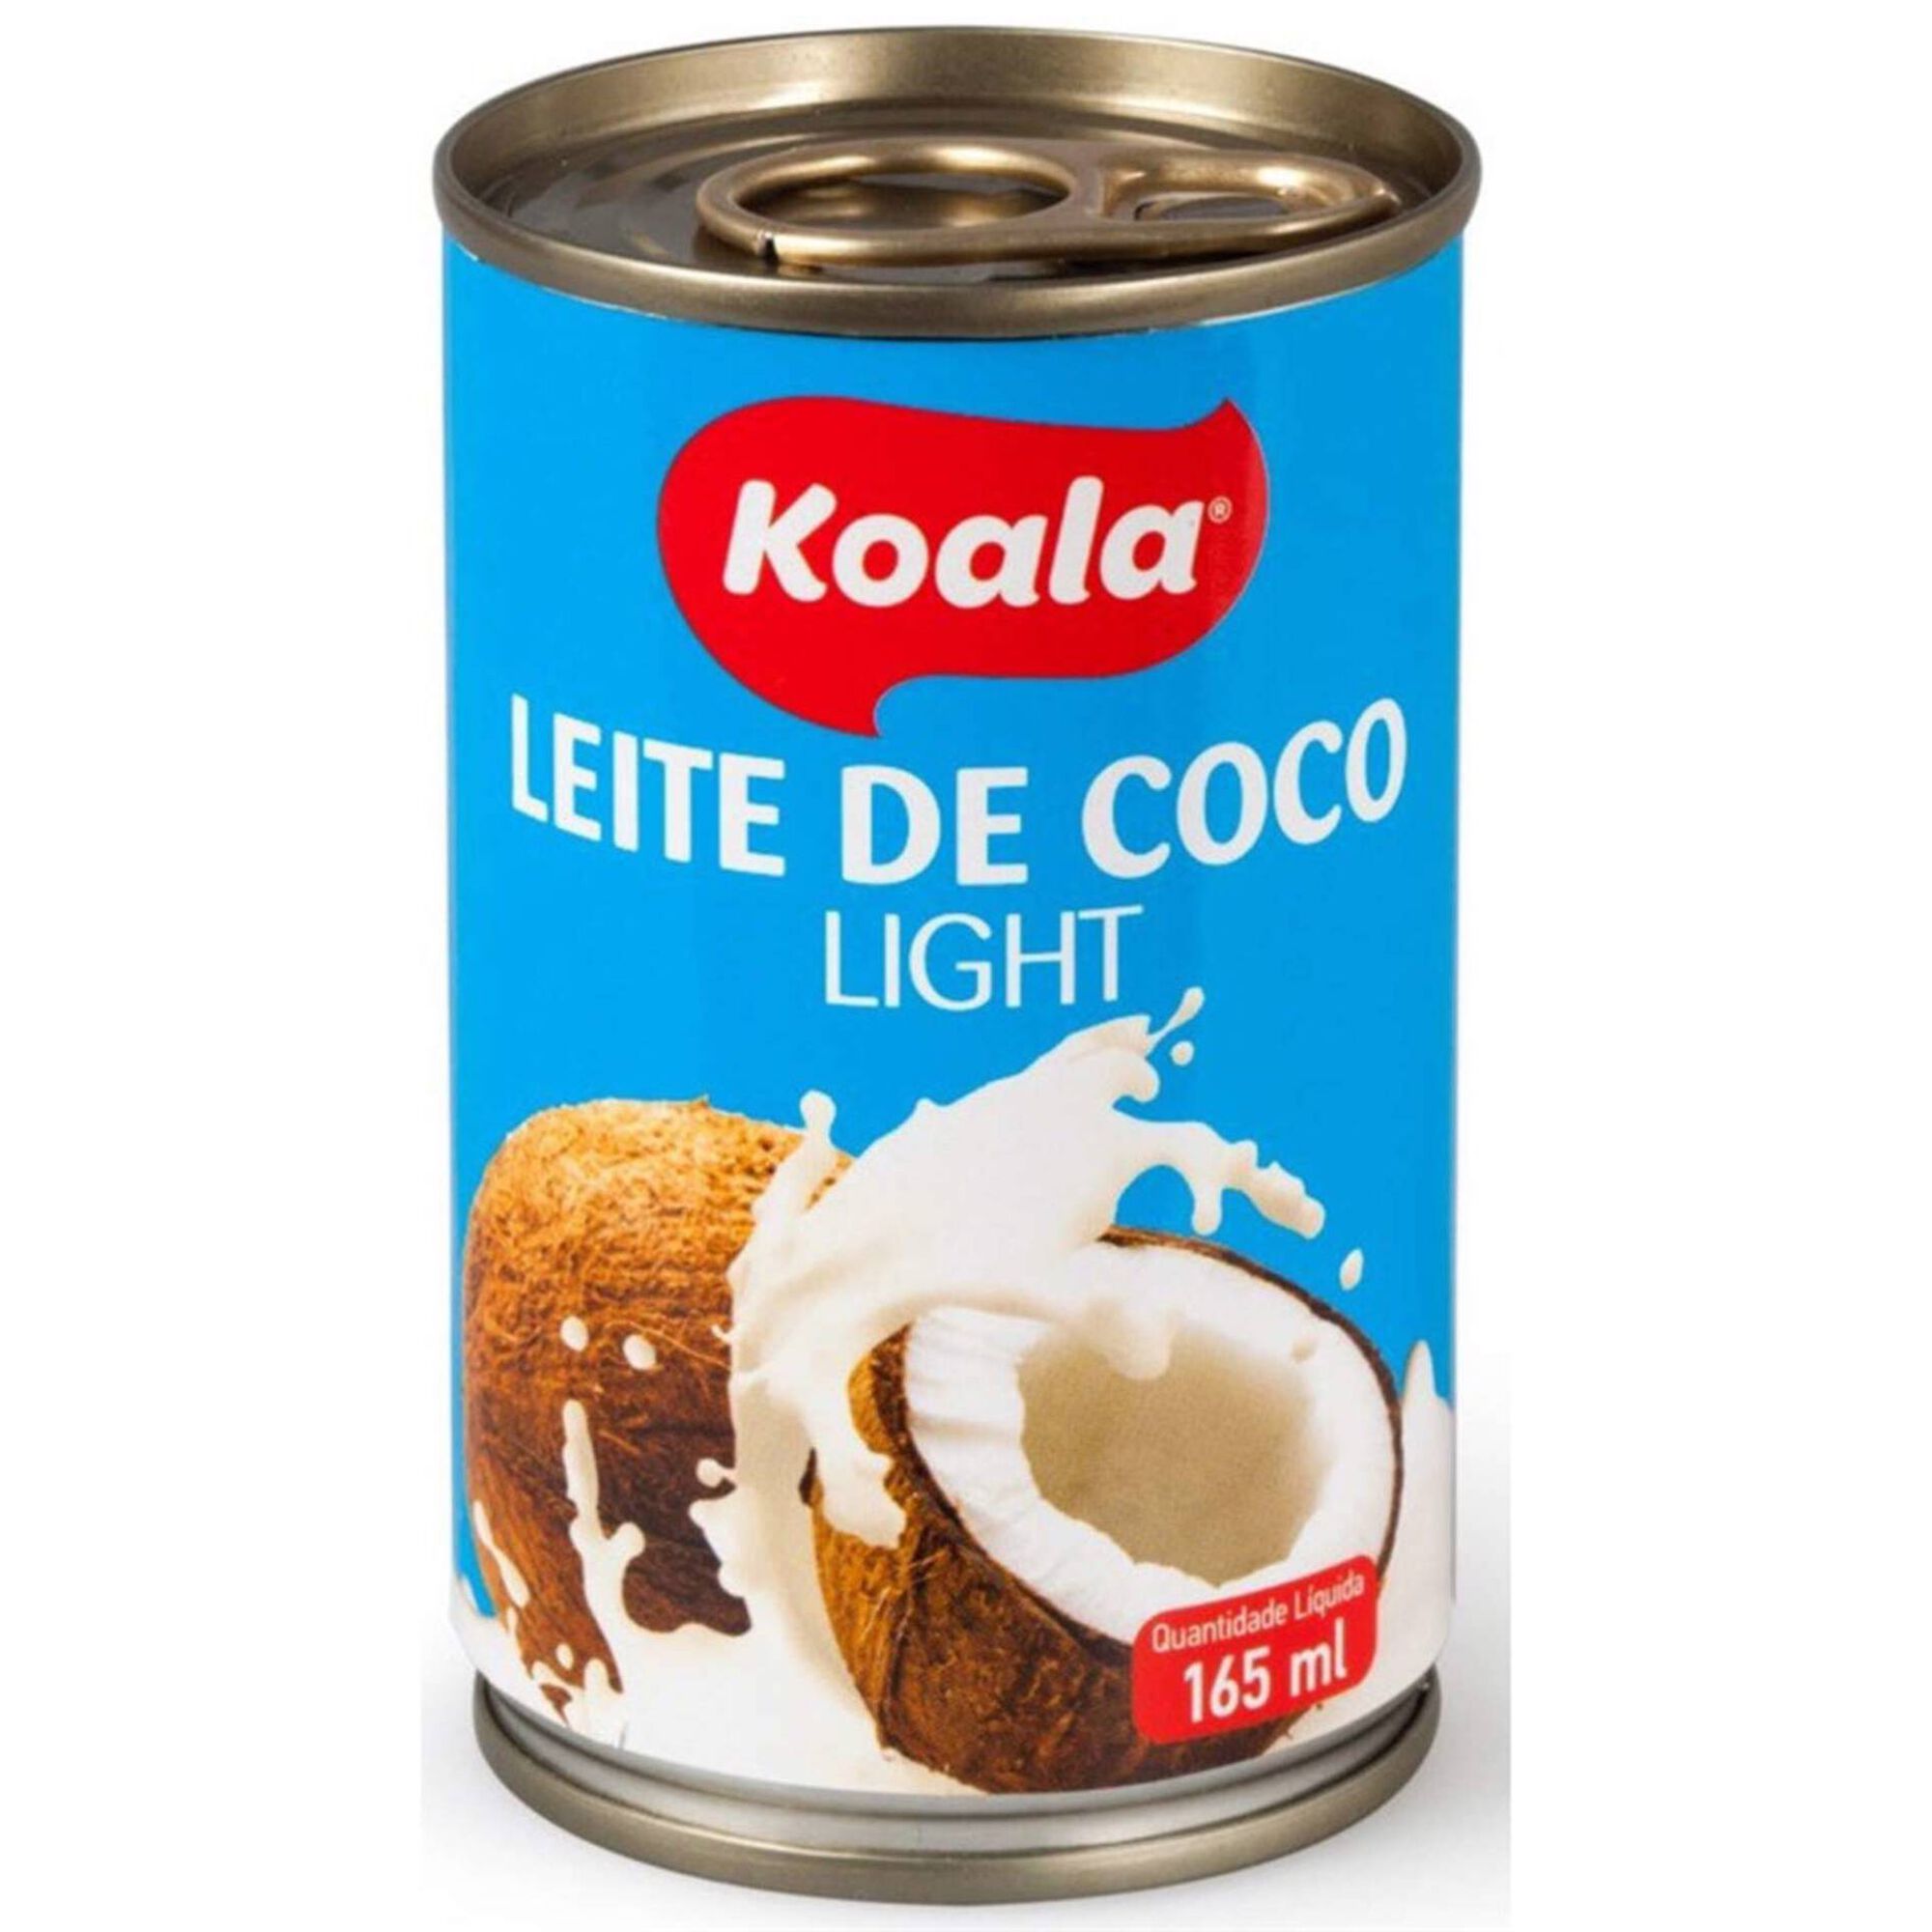 Leite de Coco Light